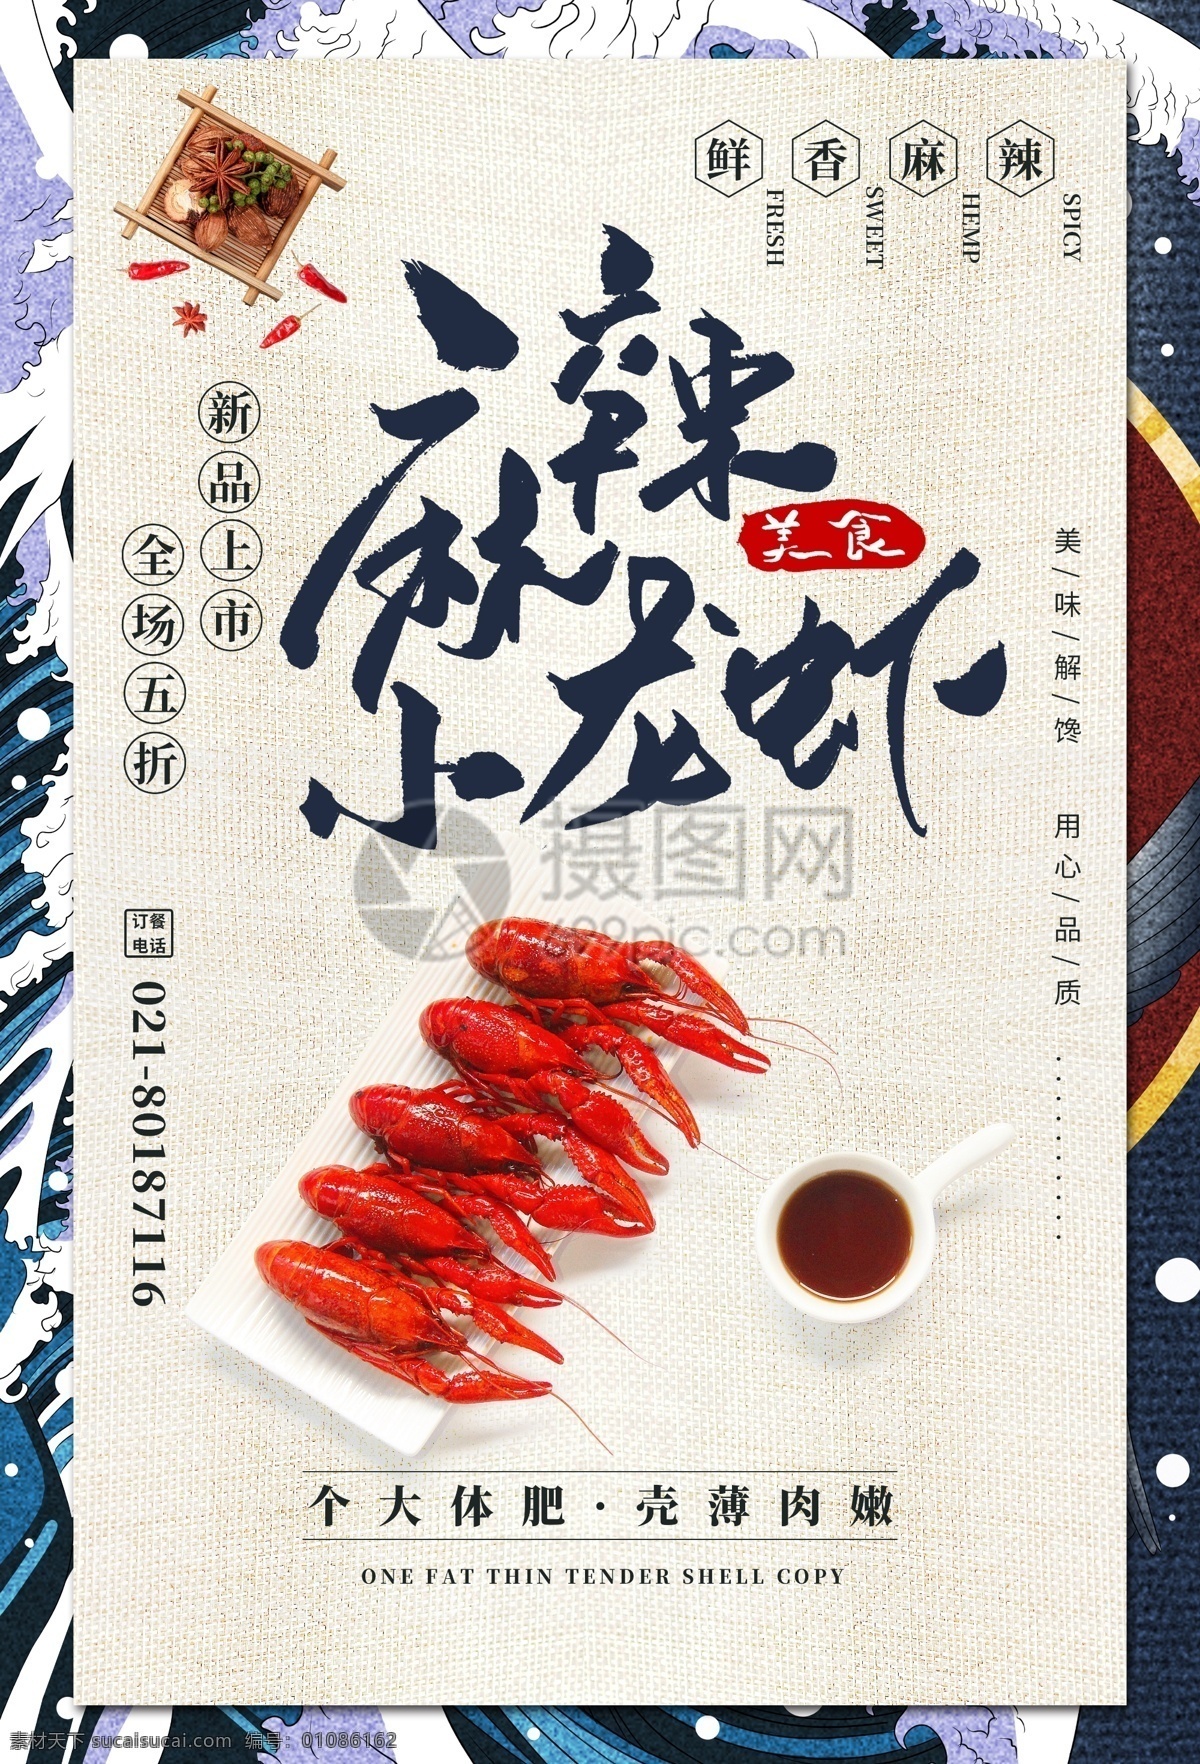 中国 风 小 龙虾 促销 海报 小龙虾 麻辣 促销海报 新品上市 美食 海鲜 餐饮海报 美食餐饮美味